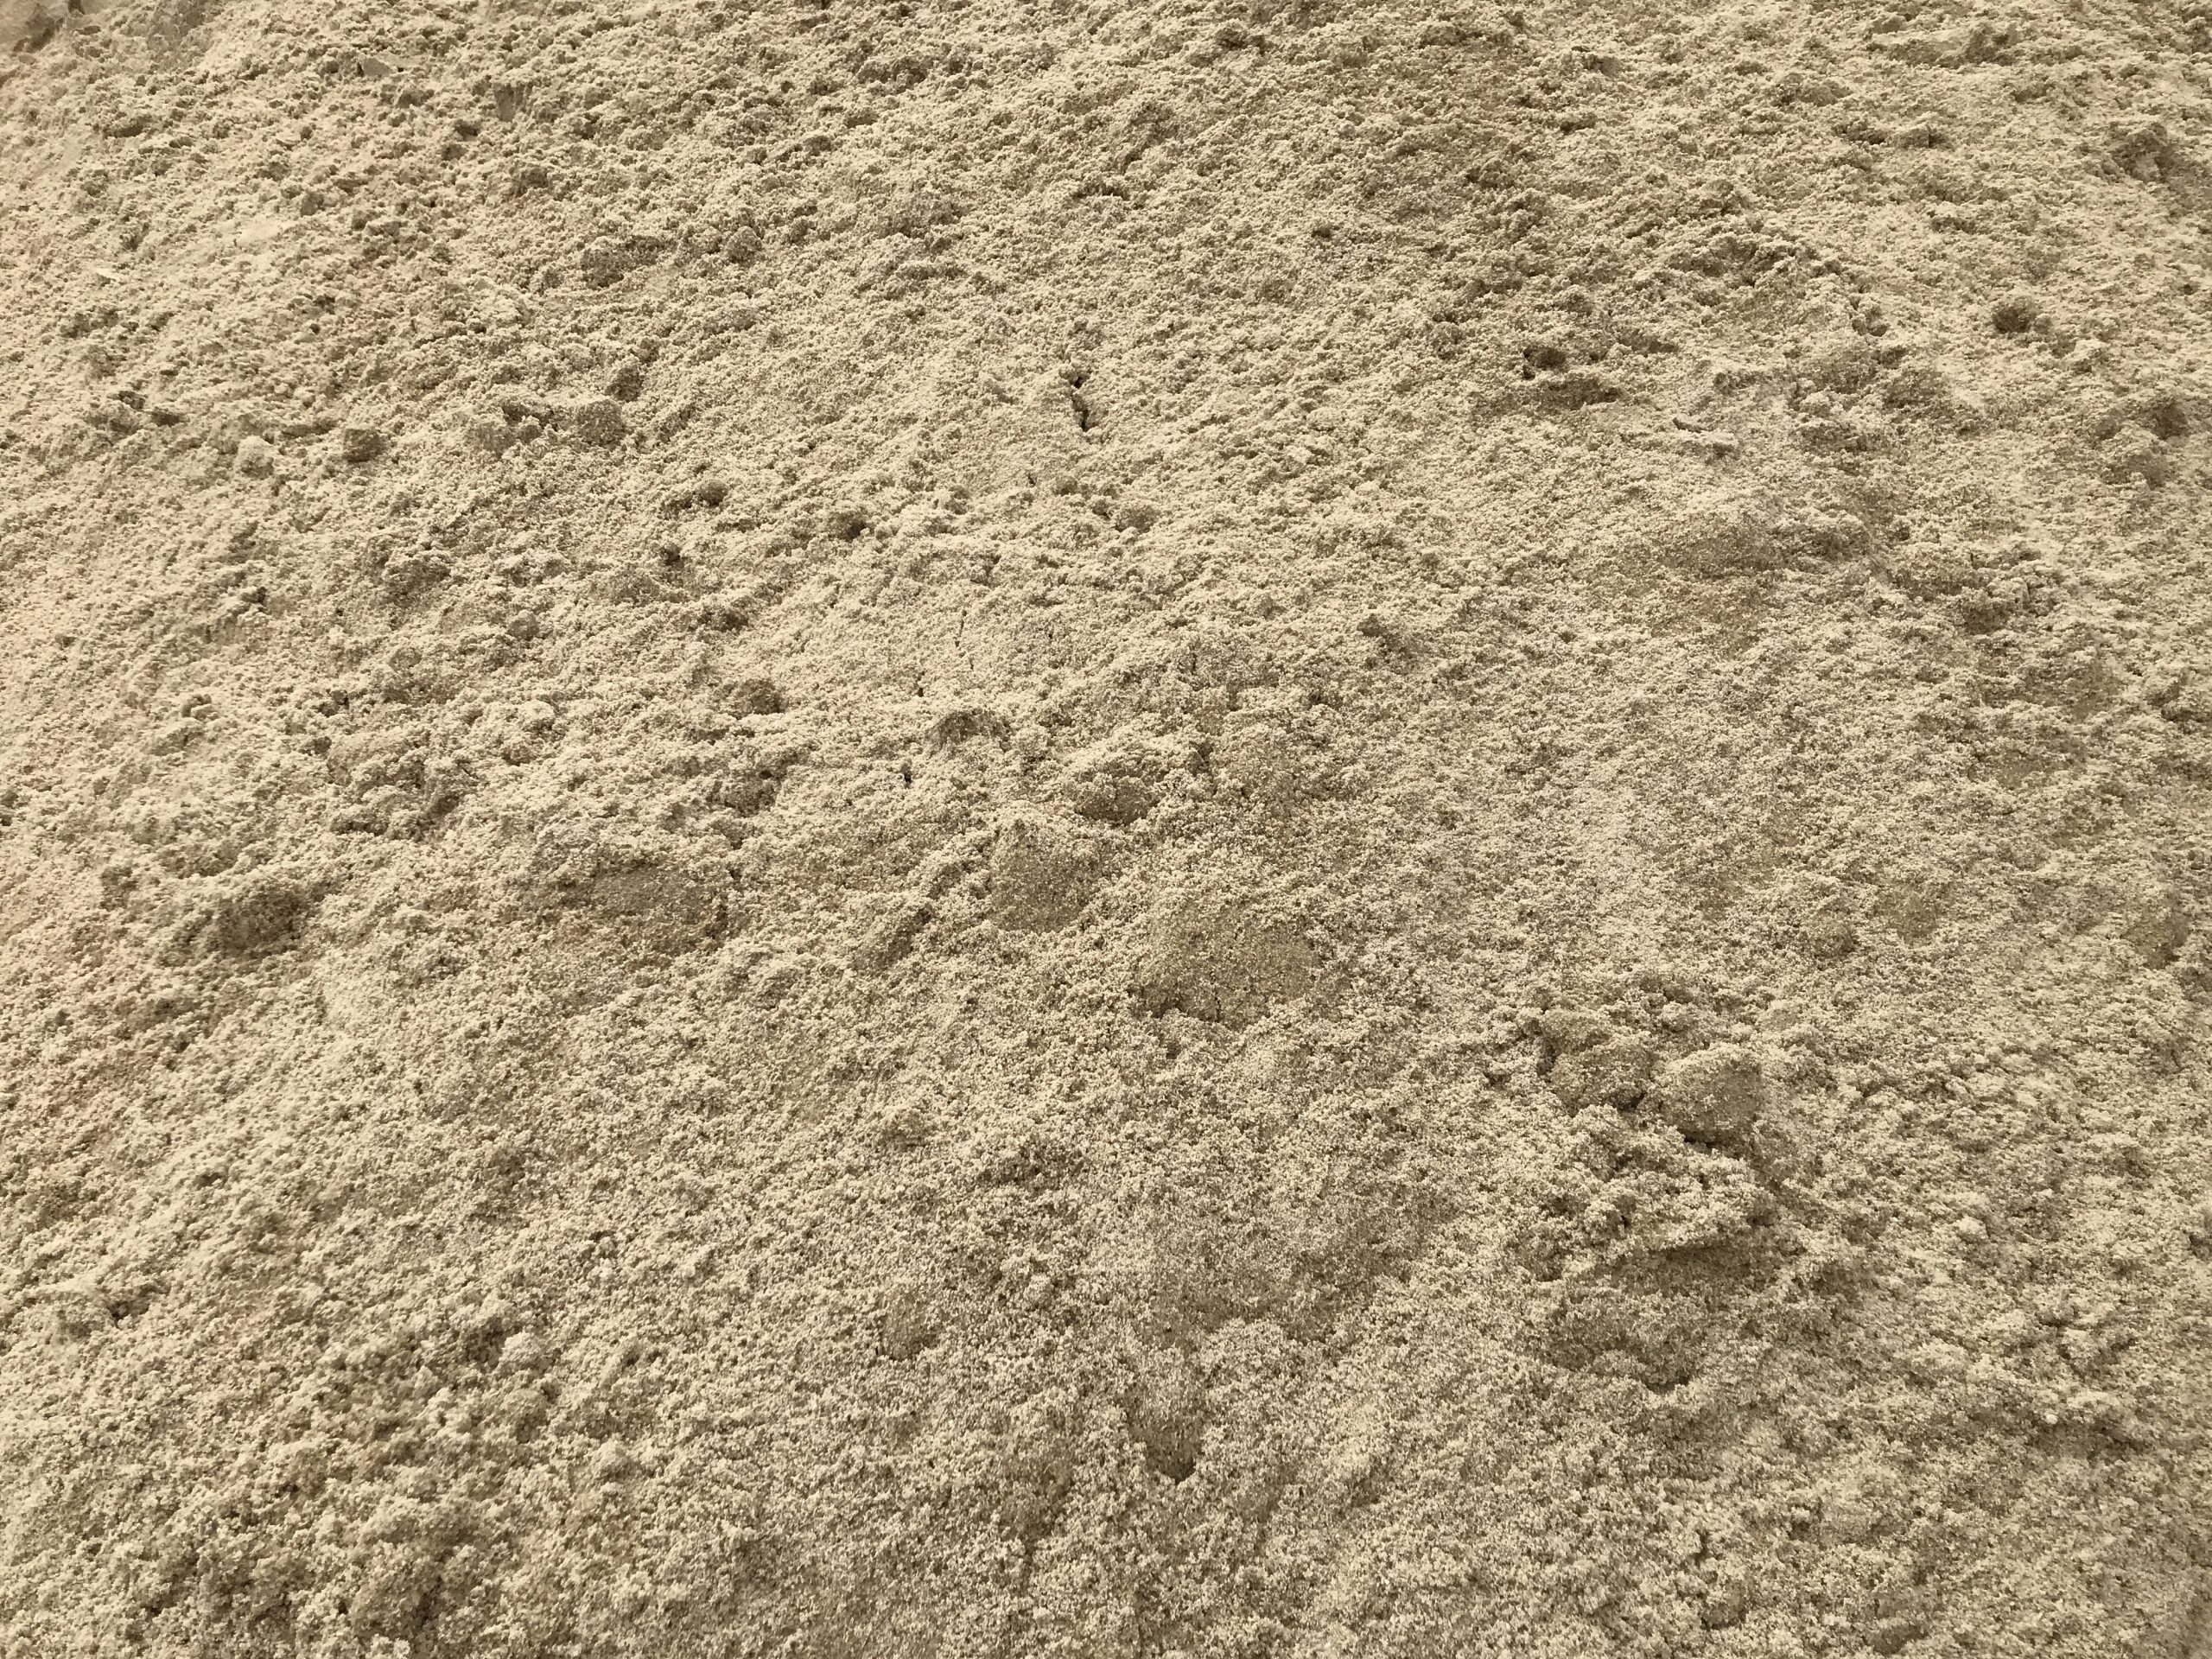 Мытый купить в нижнем новгороде. Песок Леруа Мерлен. Песок Речной сеяный. Песок карьерный песок намывной. Мелкий песок.